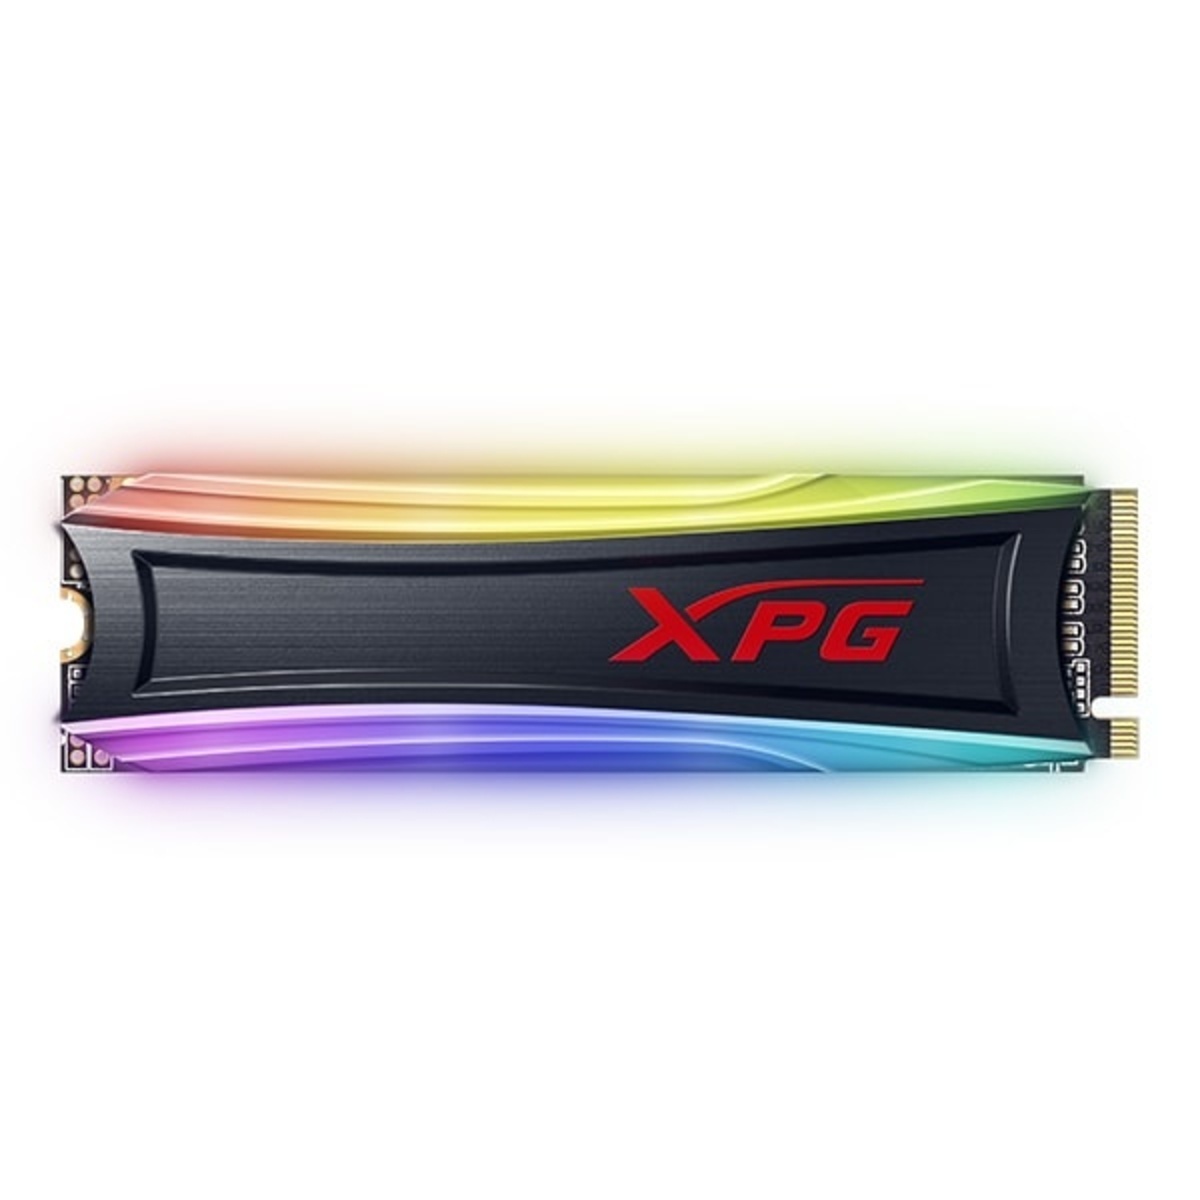 (ED) UNIDAD SSD M.2 XPG S40G RGB 2280 PCIe 512GB BOX (AS40G-512GT-C)